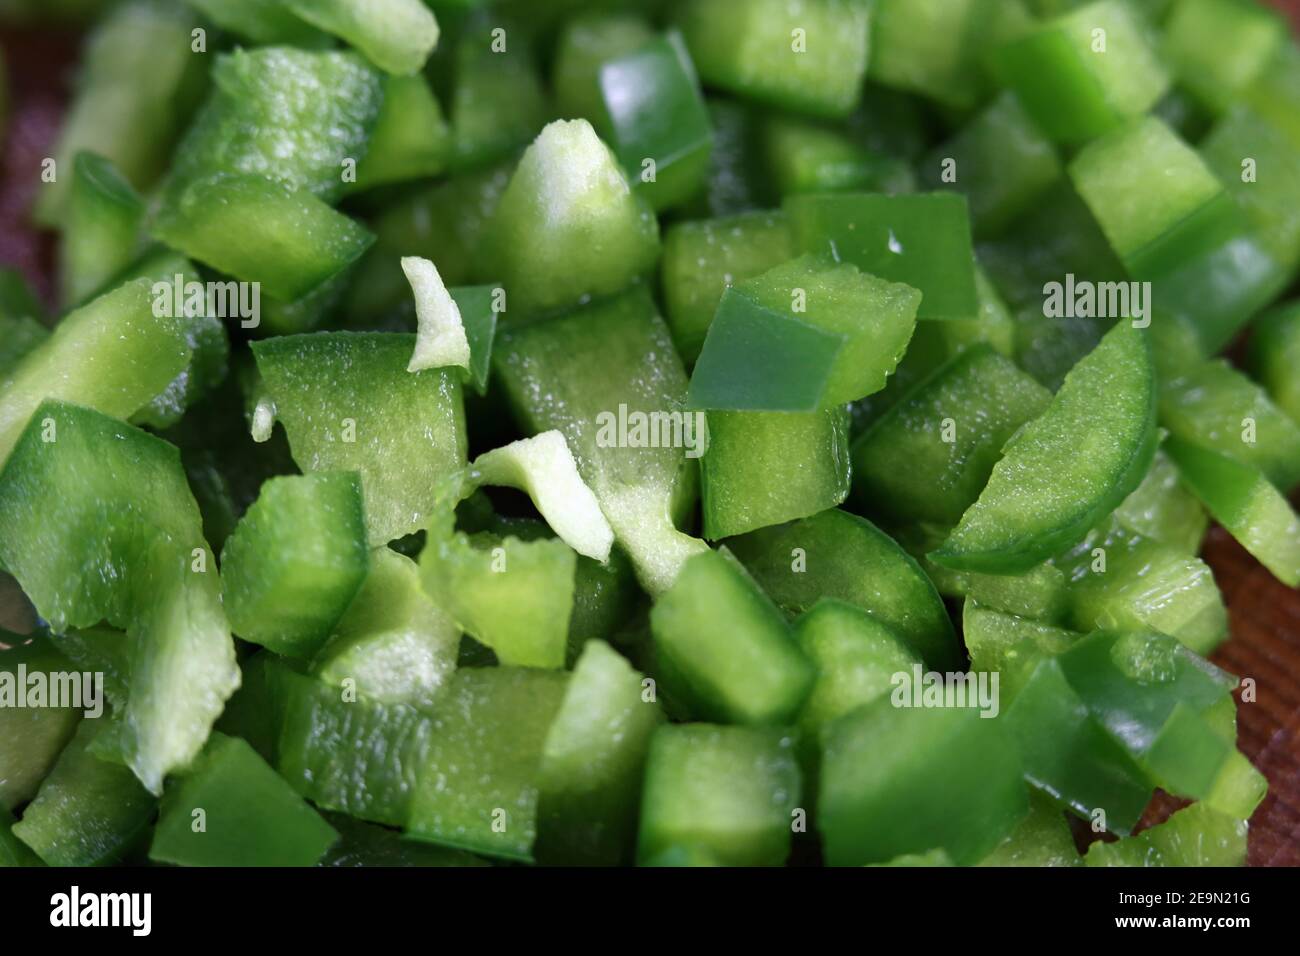 Preparación de alimentos para cocinar: Trozos picados de pimienta verde en un primer plano. Verduras saludables para una ensalada o una tortilla. Cocina casera. Foto de stock